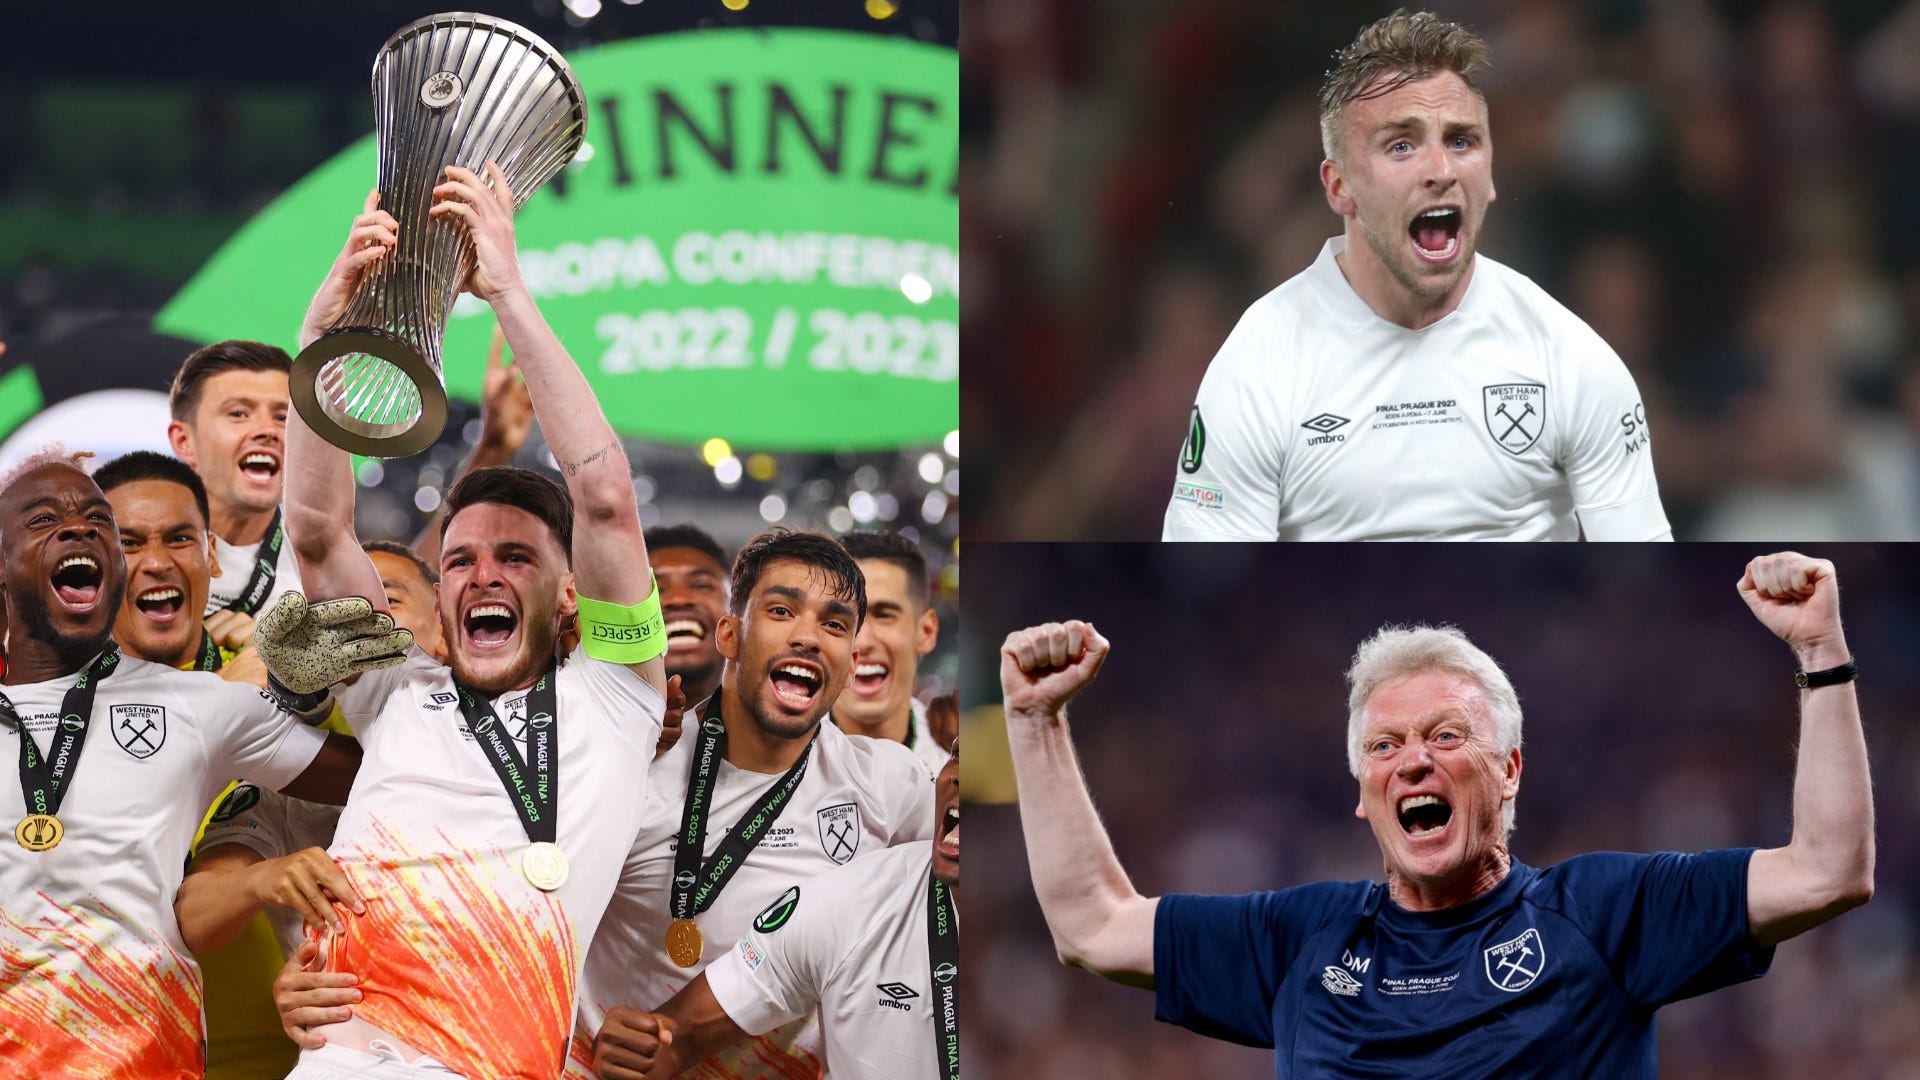 Liga dos Campeões, Liga Europa e Conference League com novo